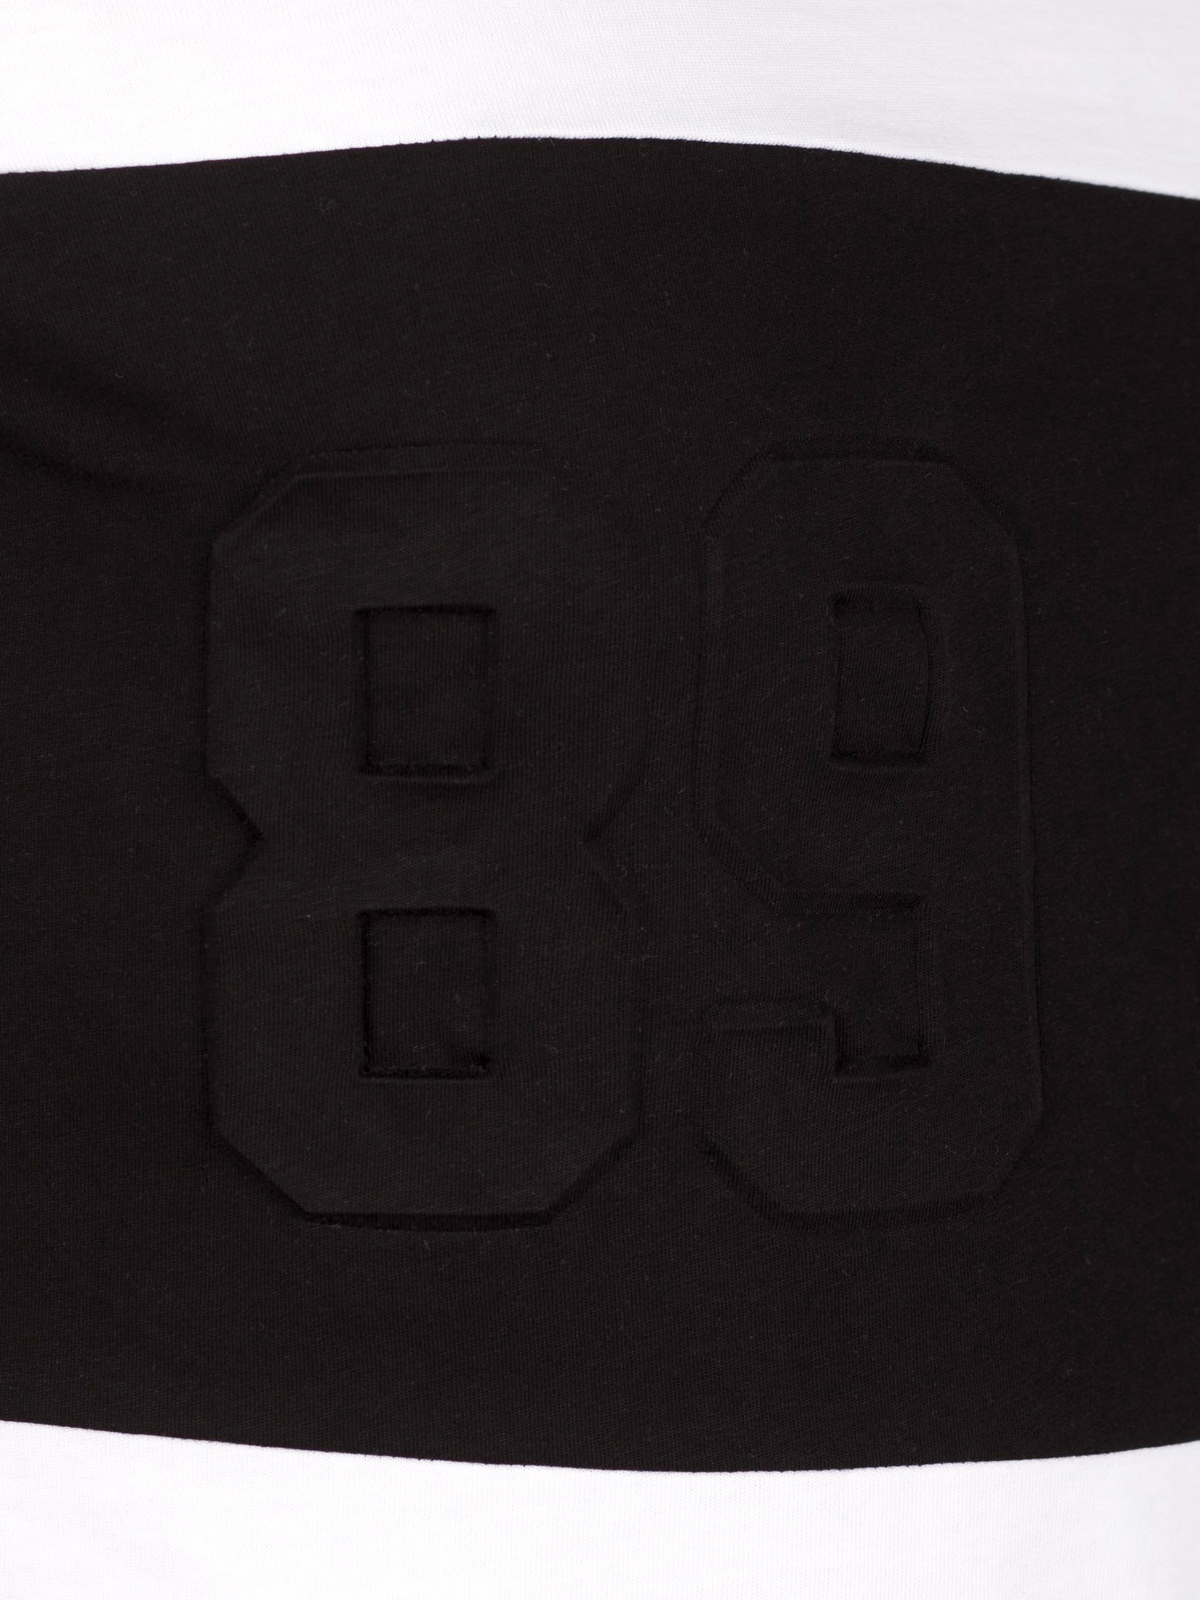 Бяла тениска с черен печат  - 96413 29.00 лв img4